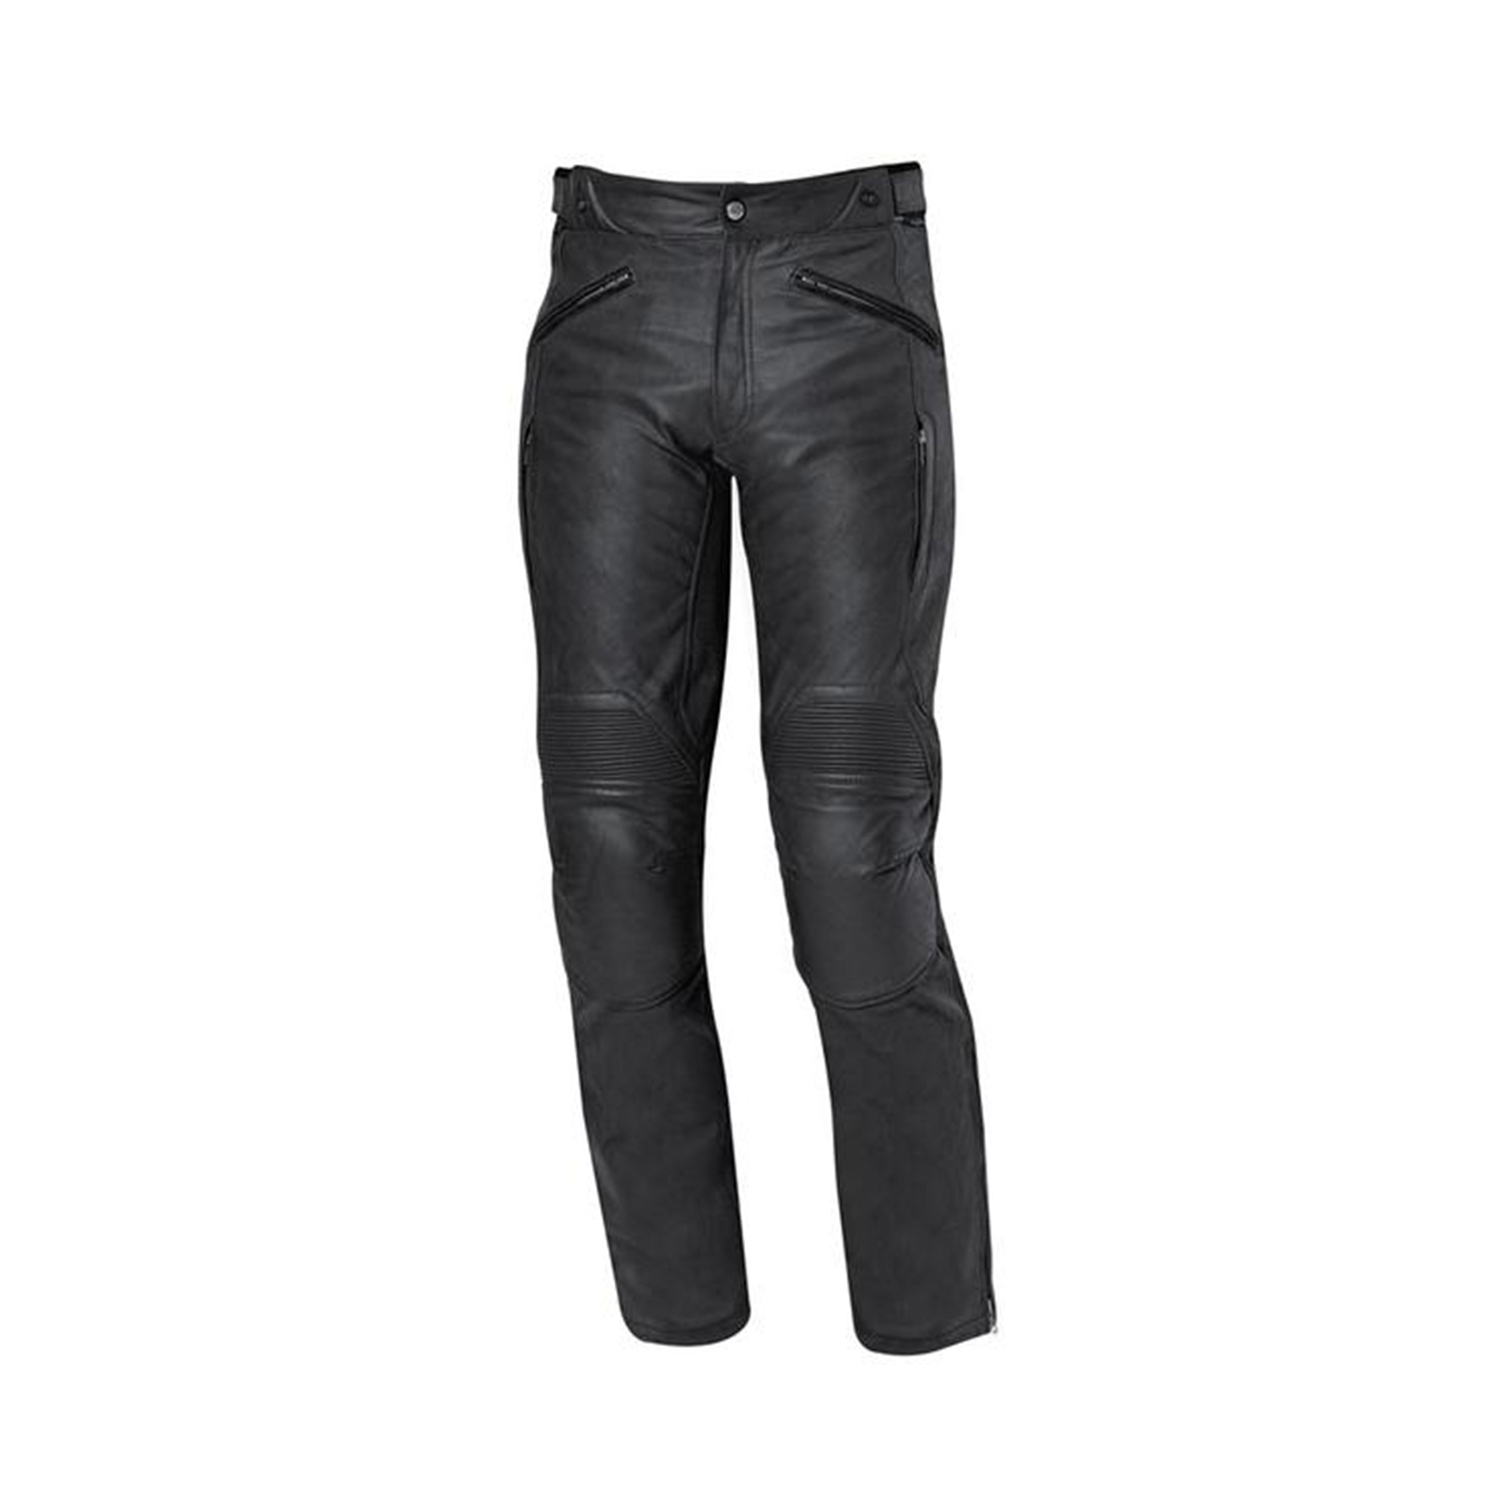 Held Avolo II Leather Pants Black - 56 | Made in Germany PTY LTD